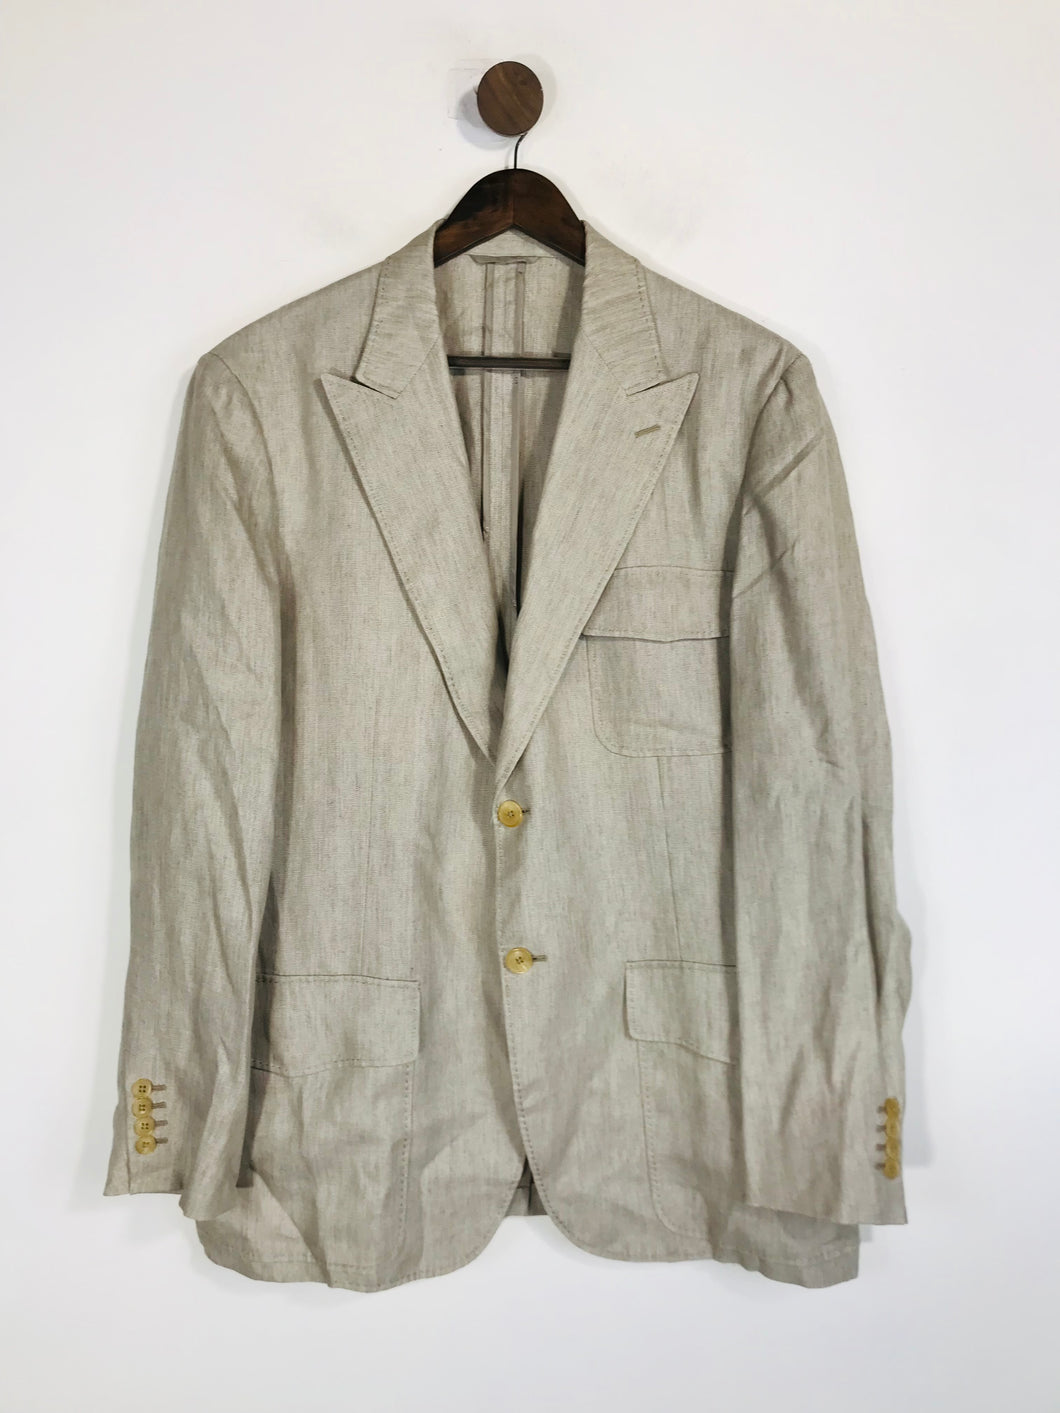 Hermes Men's Linen Blazer Jacket | 54 | Beige